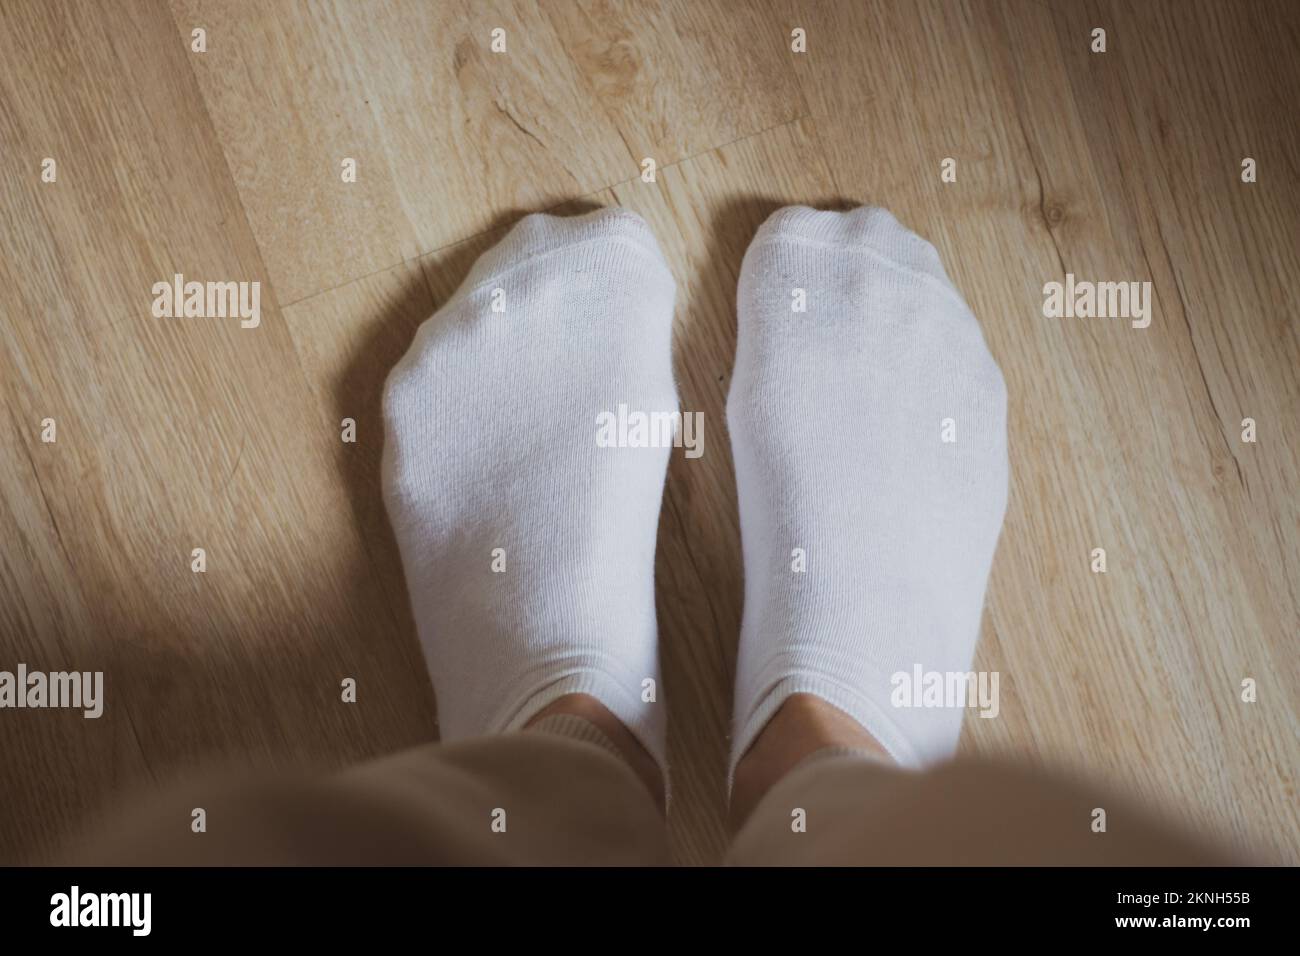 Weiße Socken auf dem Boden. Damenschuhe. Warmes Bekleidungskonzept. Bequeme Baumwollkleidung. Familiäre Hintergründe. Weiße Socken auf Mädchenfüßen. Stockfoto